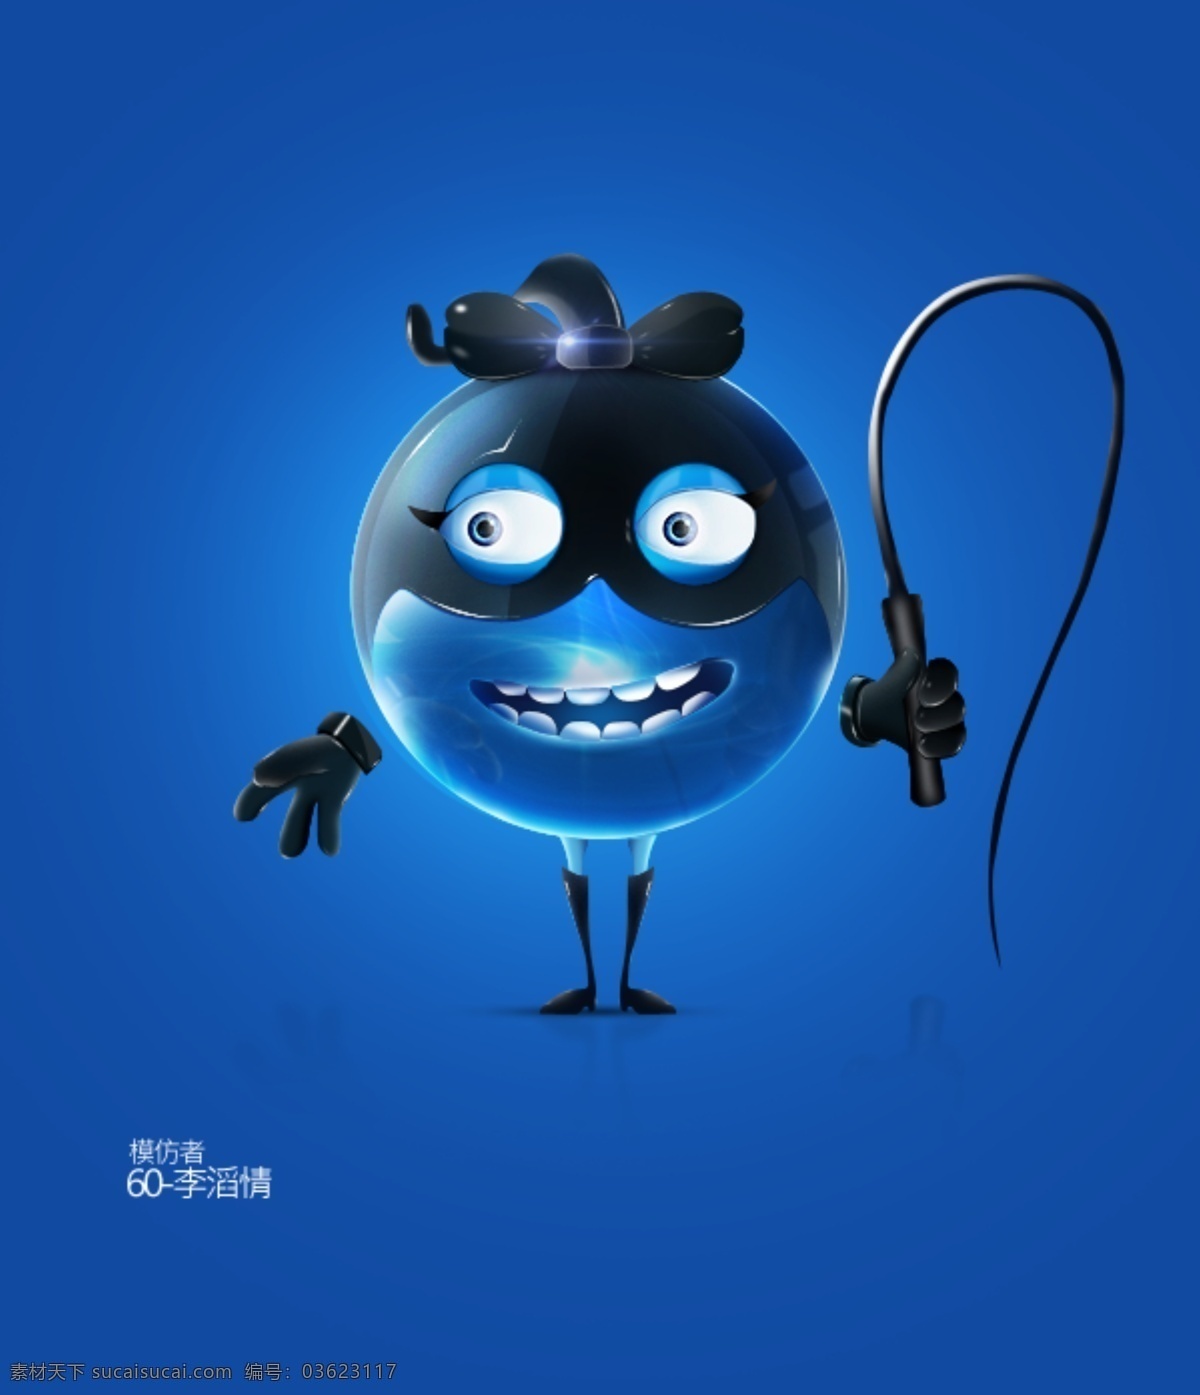 怪物 侠盗 ui 图标 蓝色 笑 鞭子 小怪物 神偷 手机 app app图标